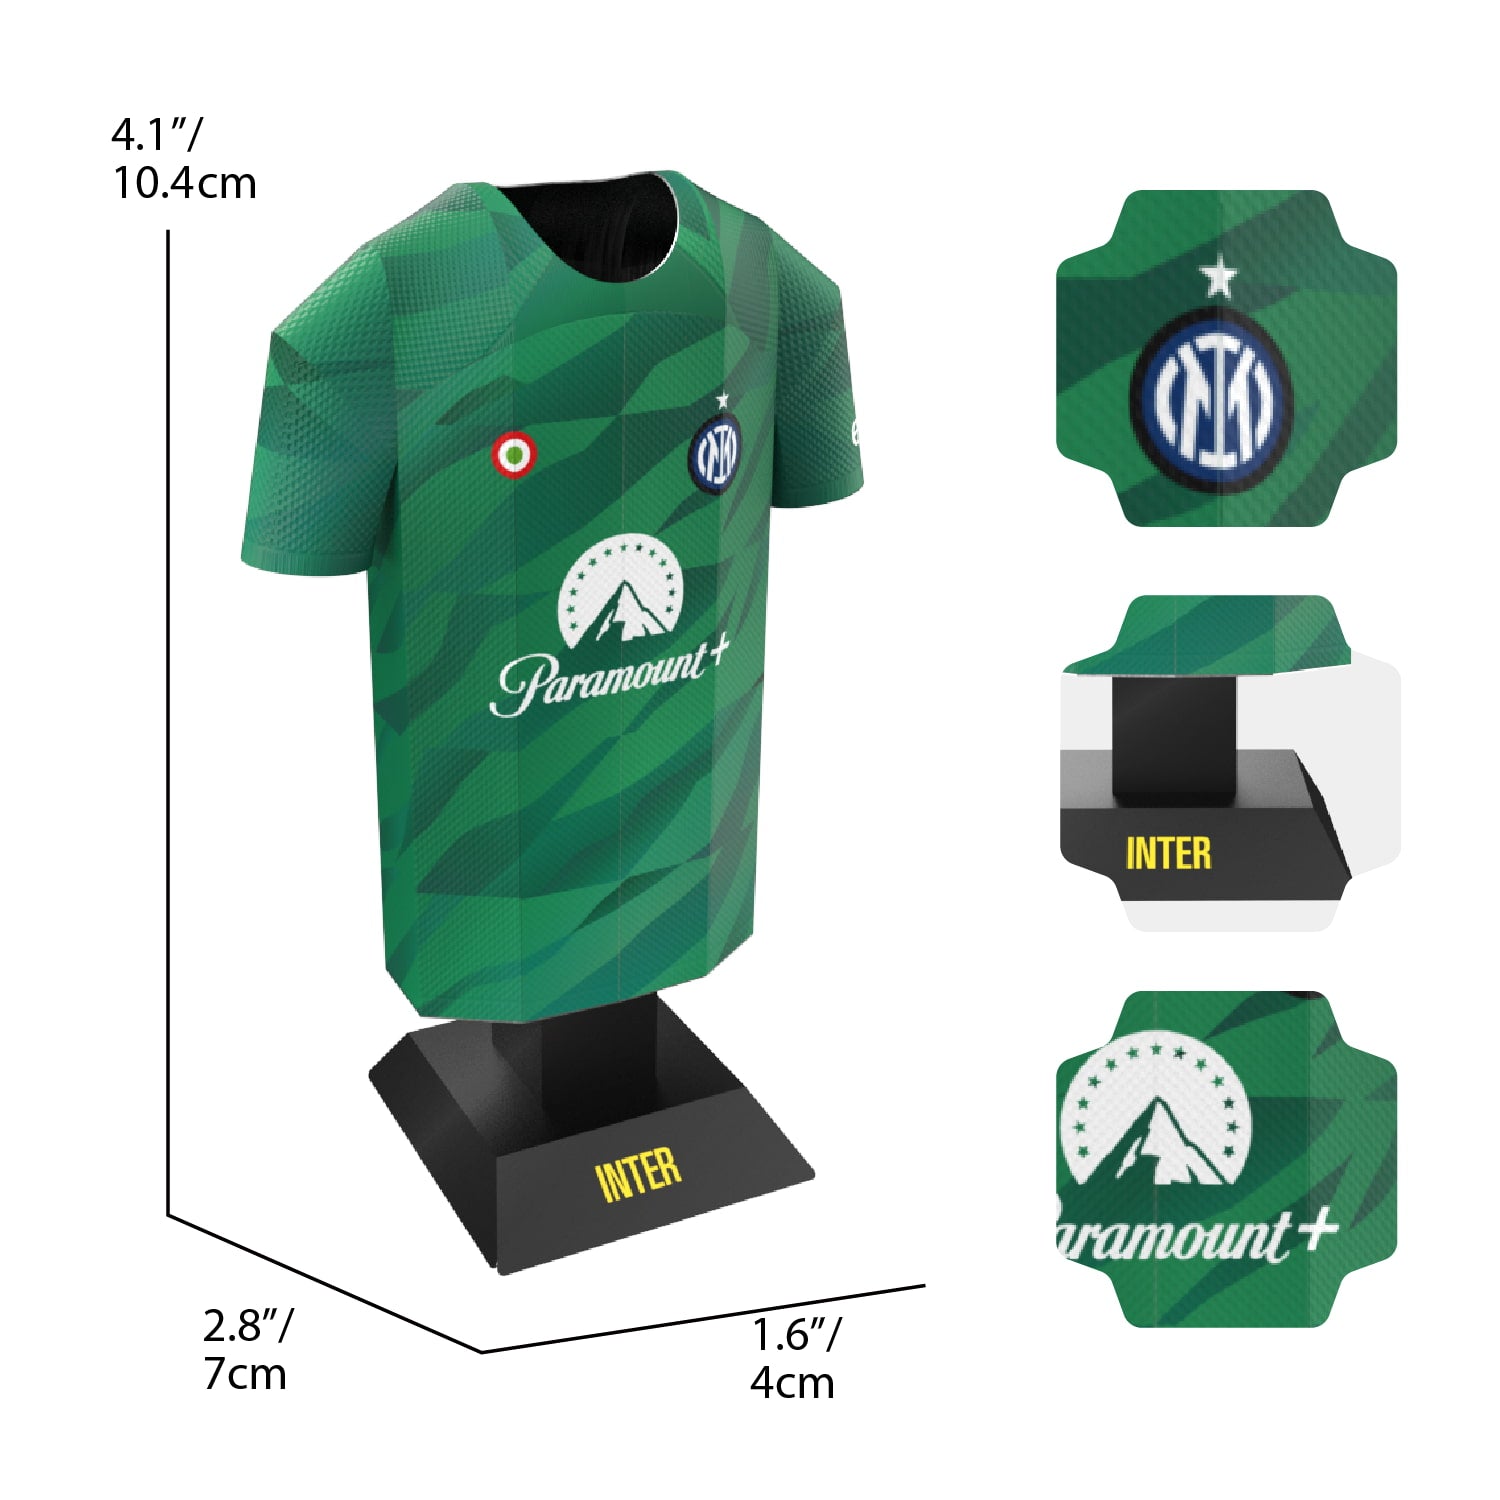 inter goalkeeper shirt dimensions